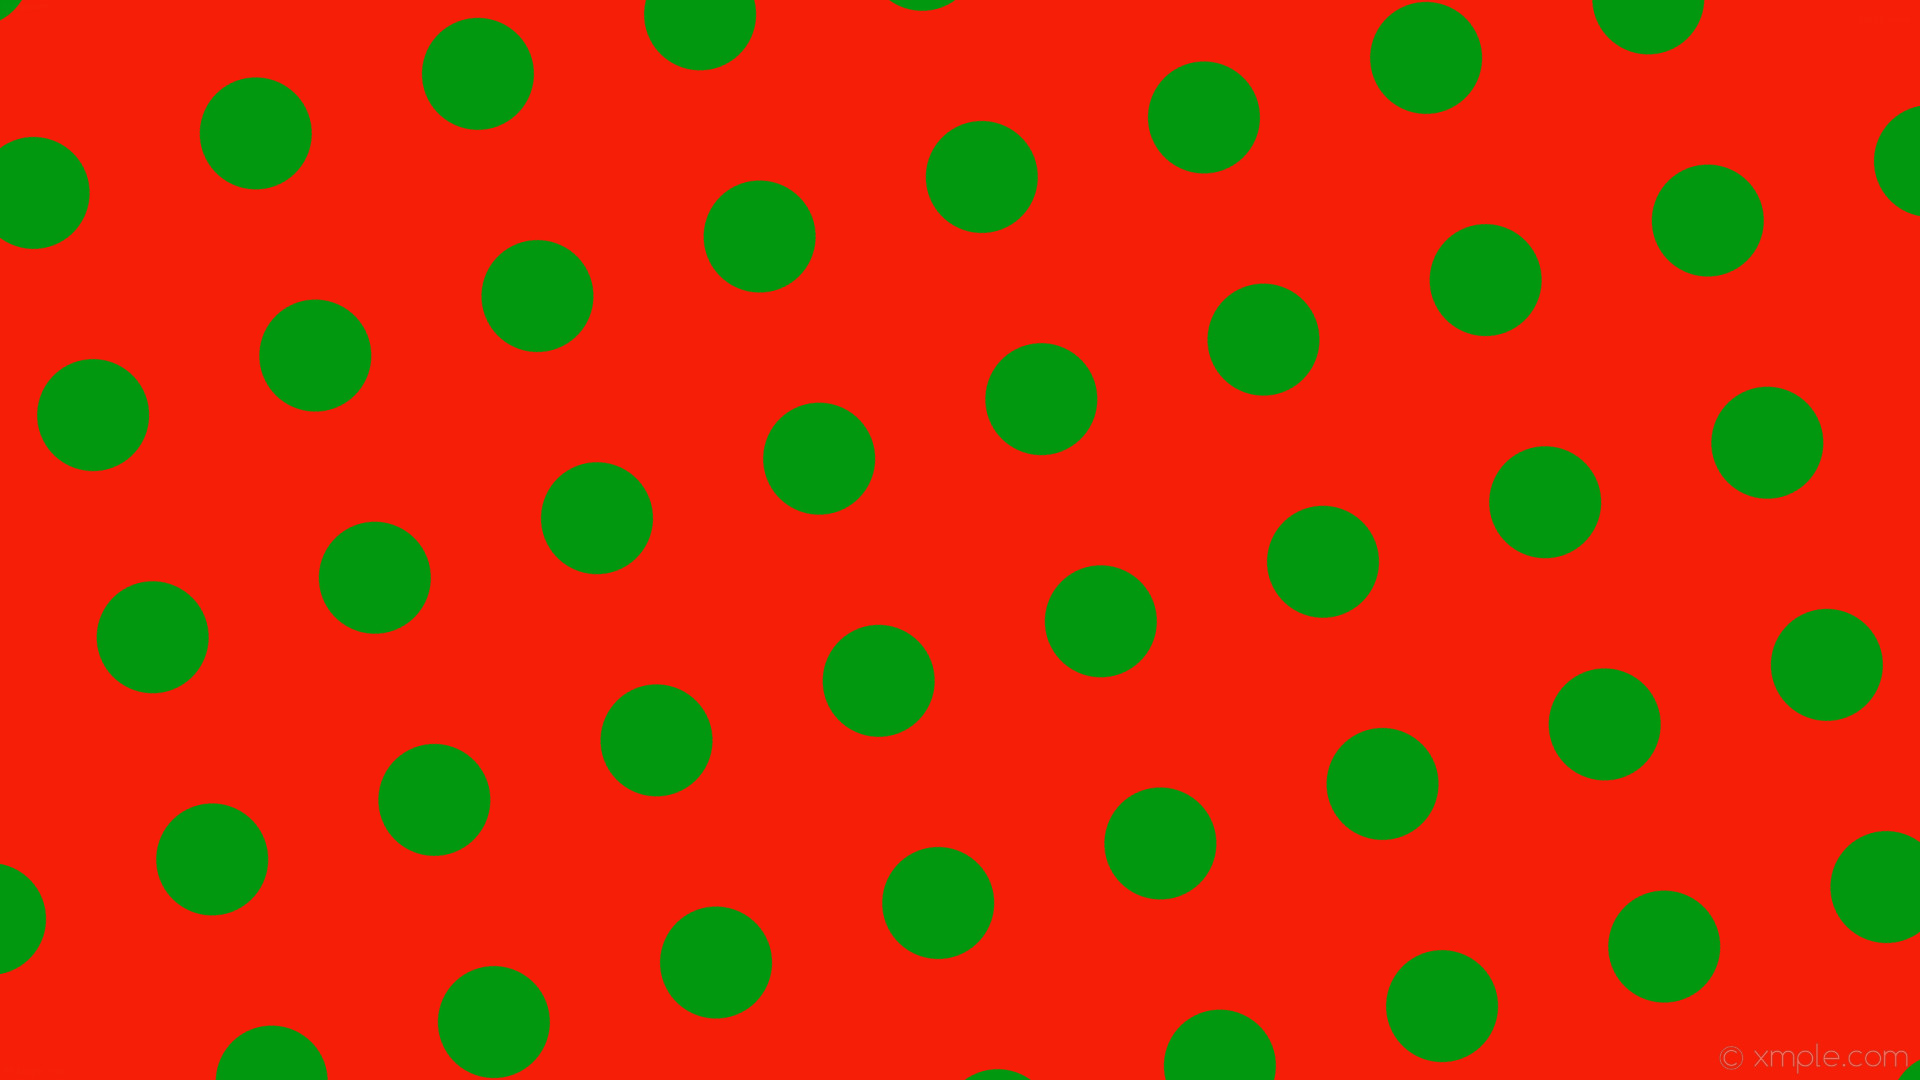 1920x1080 wallpaper red polka dots green spots #f61e06 #01980f 285Â° 112px 230px